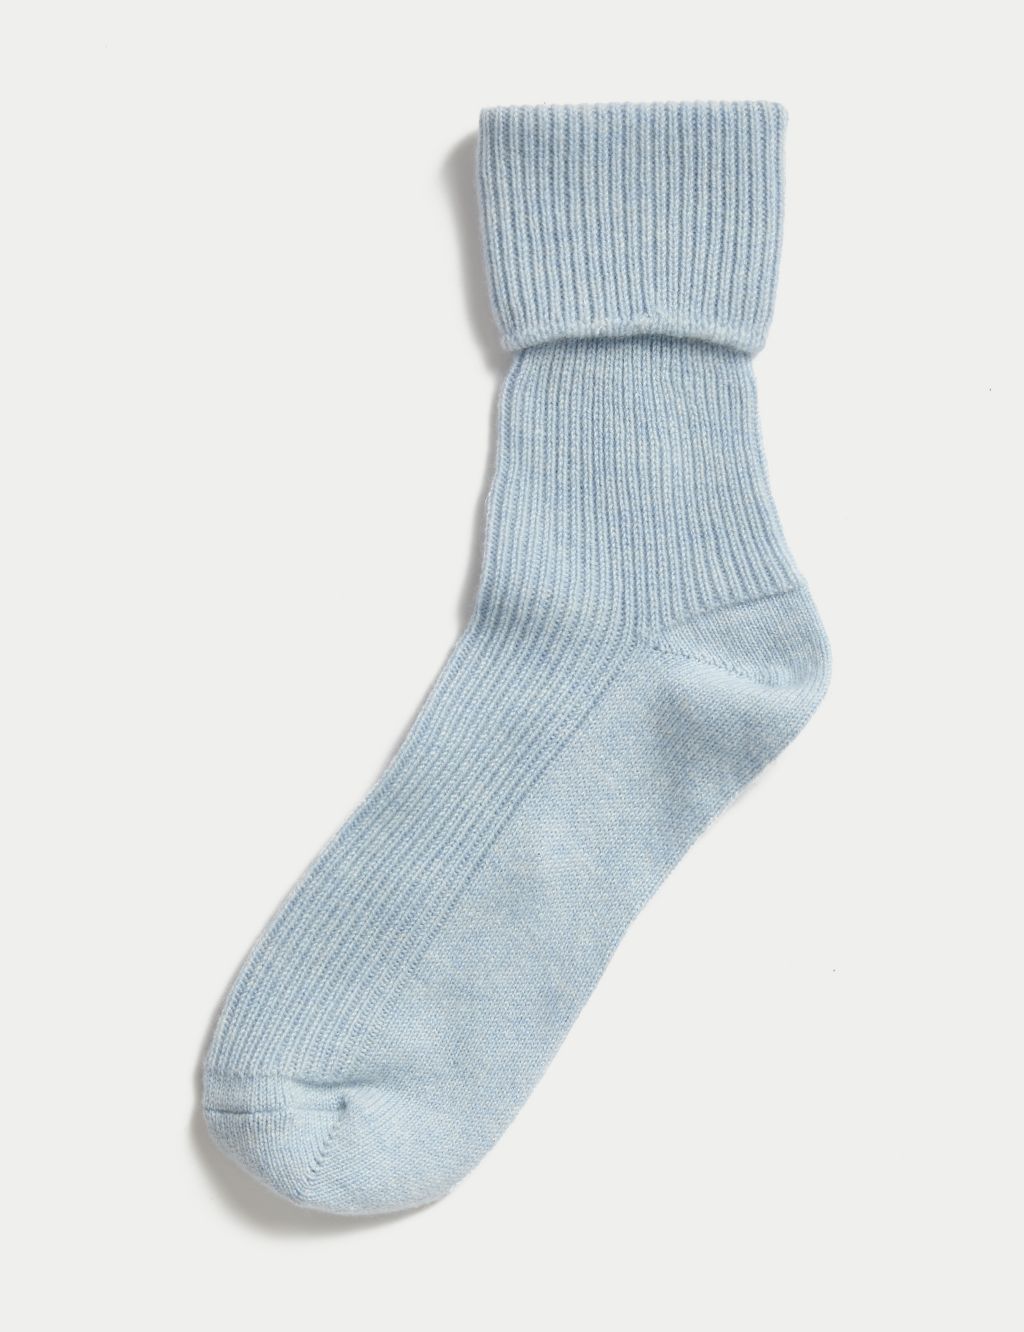 Pure Cashmere Socks image 1